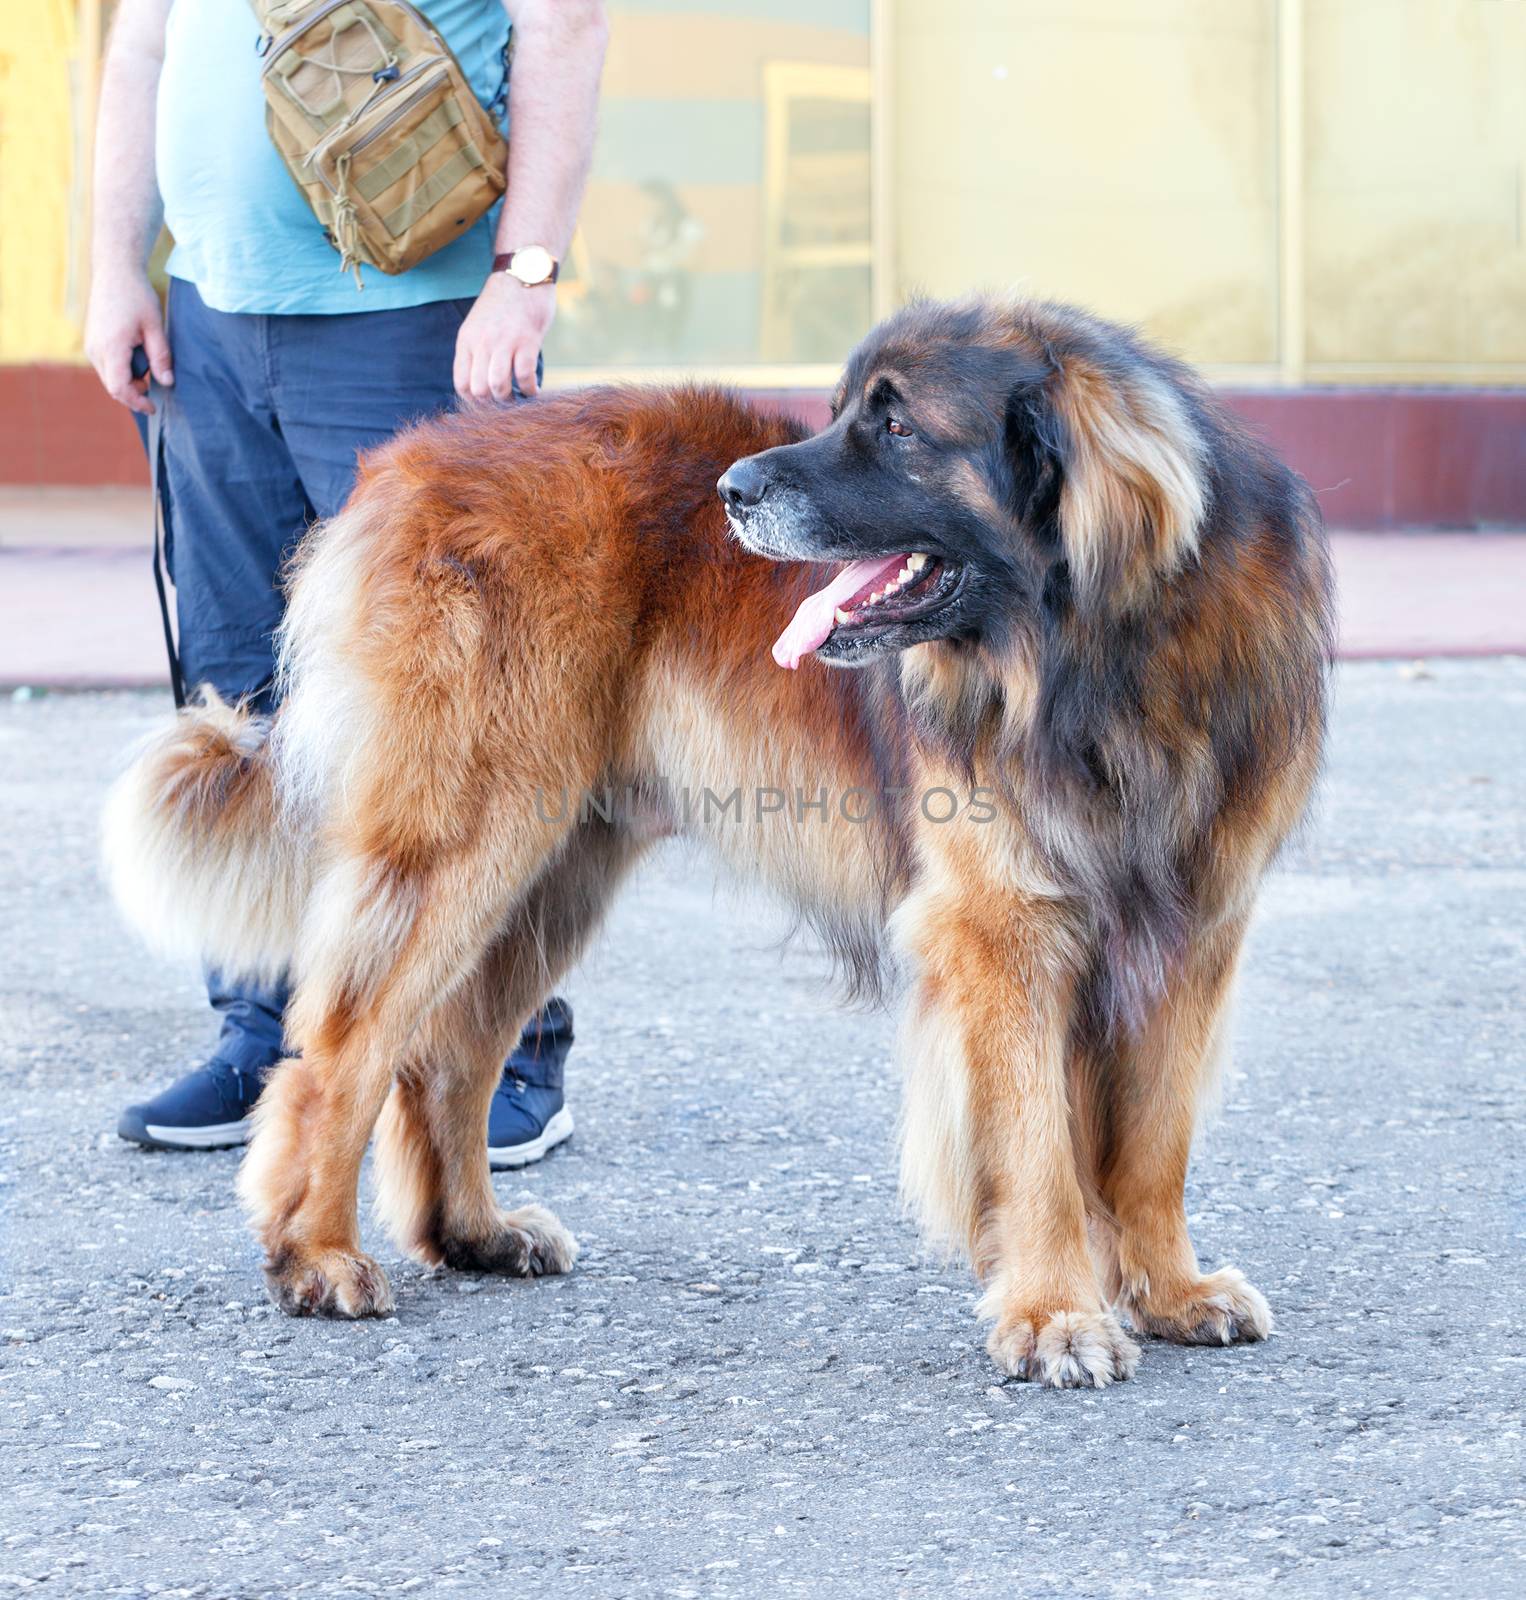 Portrait of a large Leonberger dog standing on the asphalt sidewalk. by Sergii